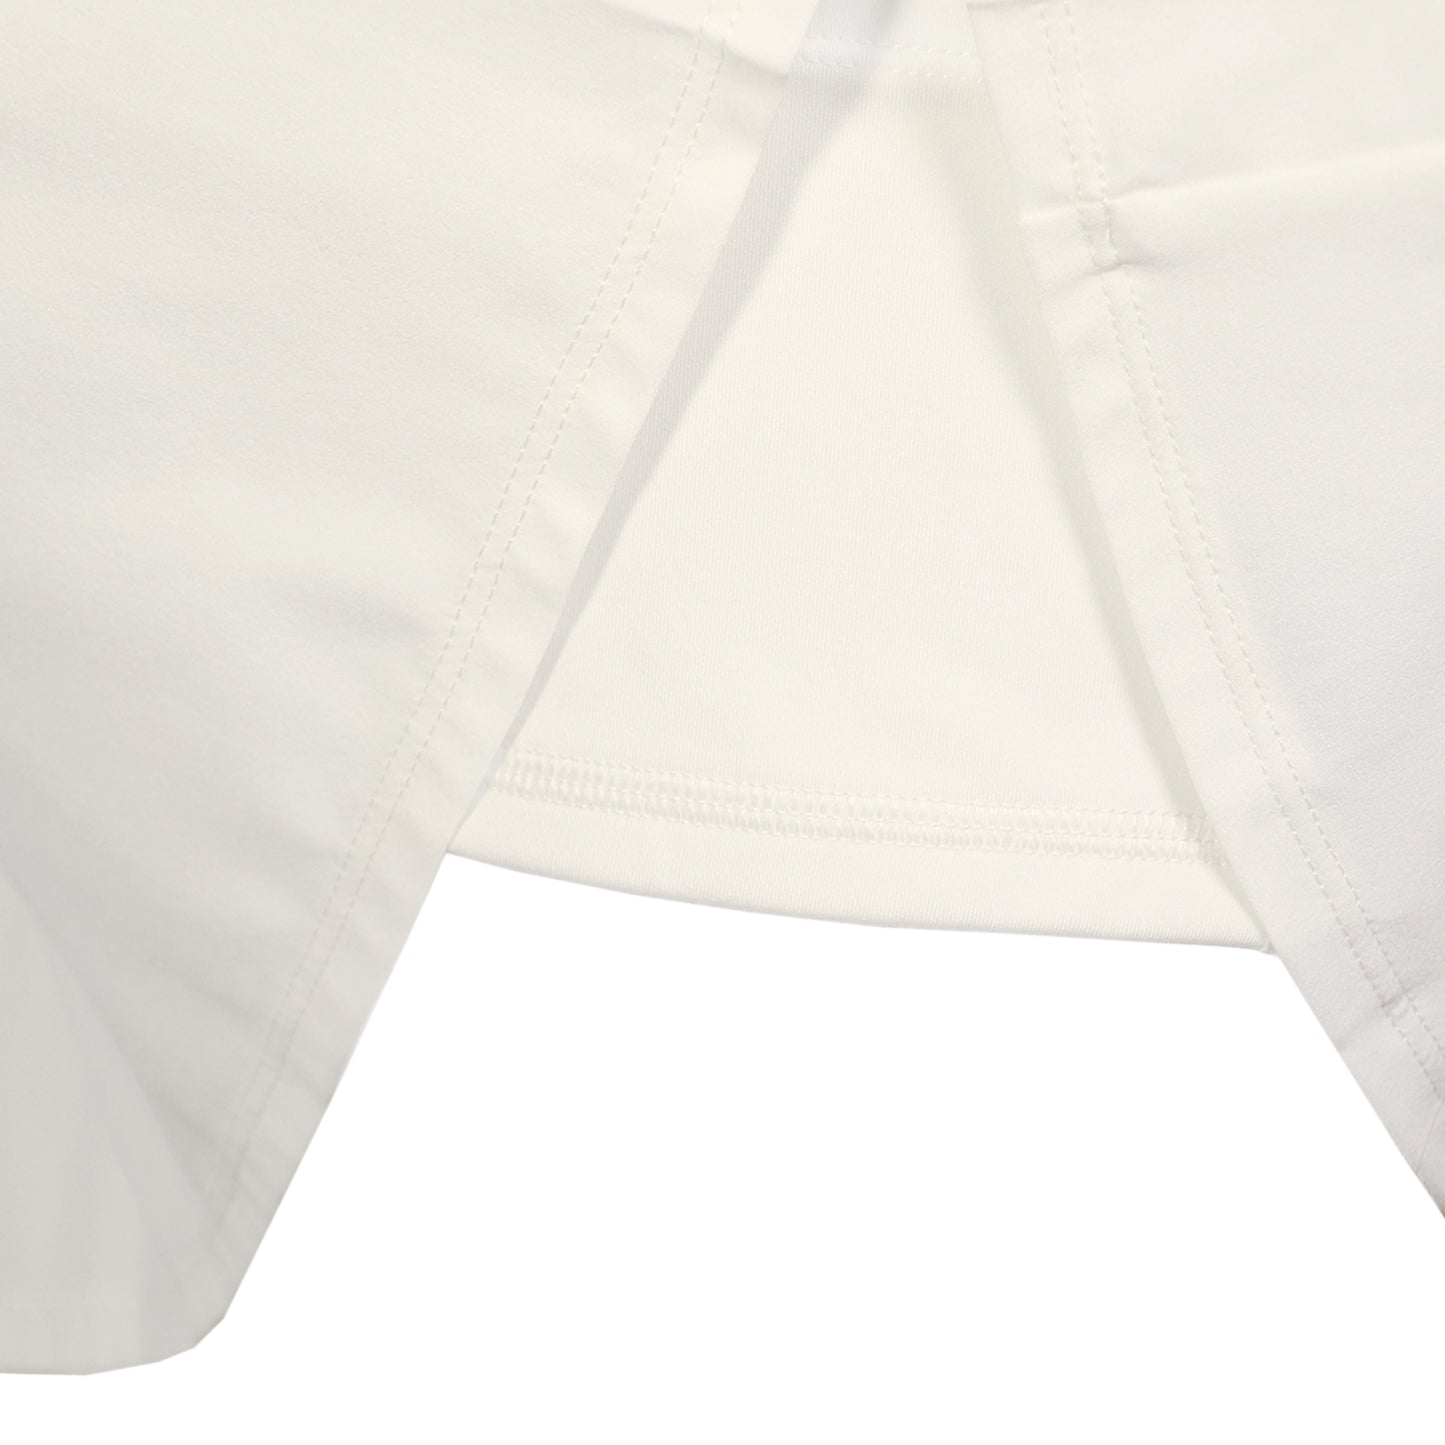 Lacoste Women's Skirt JF9433-52-NYV